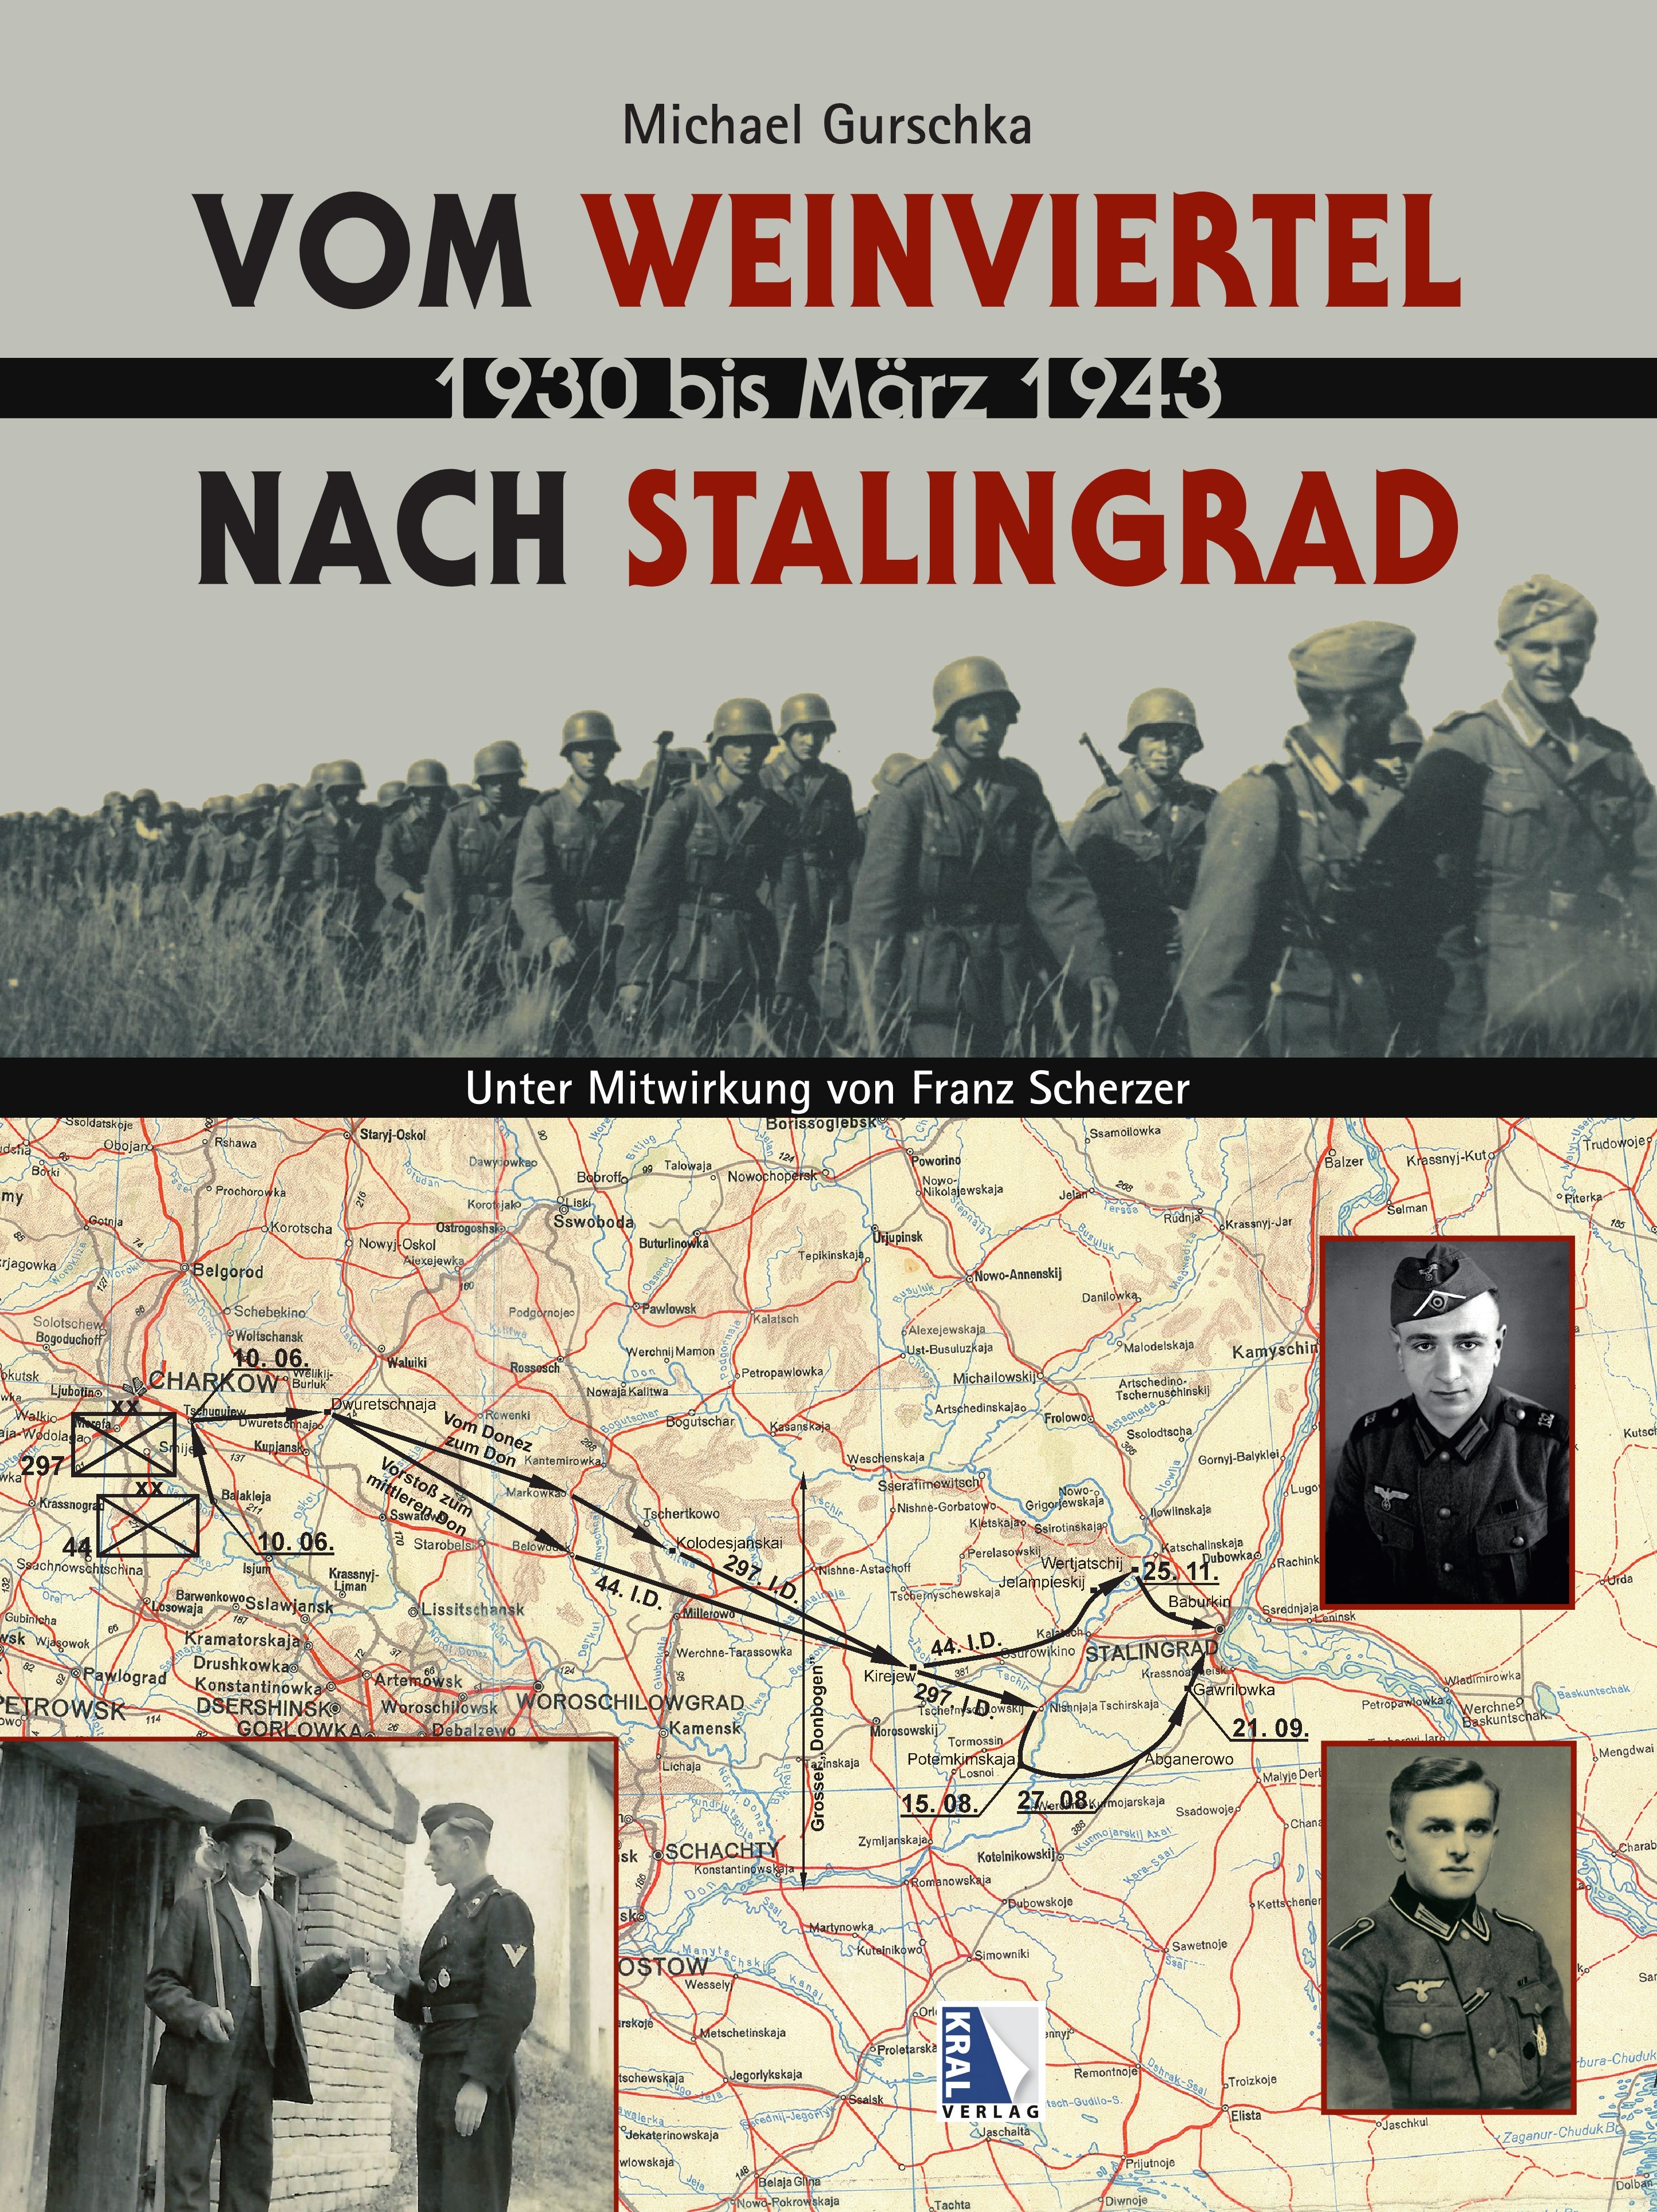 Vom Weinviertel nach Stalingrad: von 1930 bis März 1943 